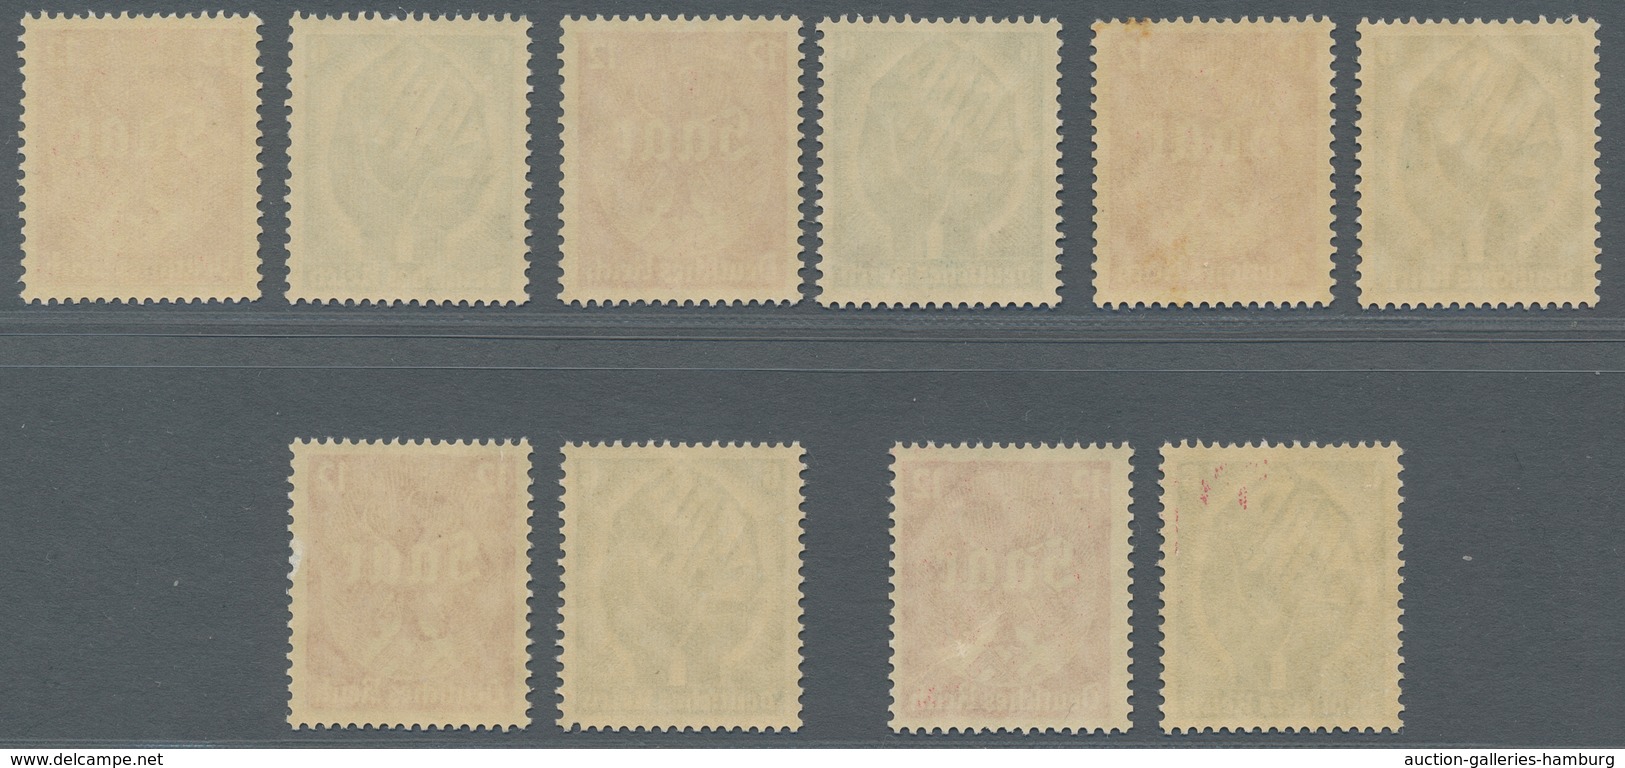 Deutsches Reich - 3. Reich: 1934, Saarabstimmung, 5 Sätze Einwandfrei Postfrisch, Mi. 450,00 - Nuevos